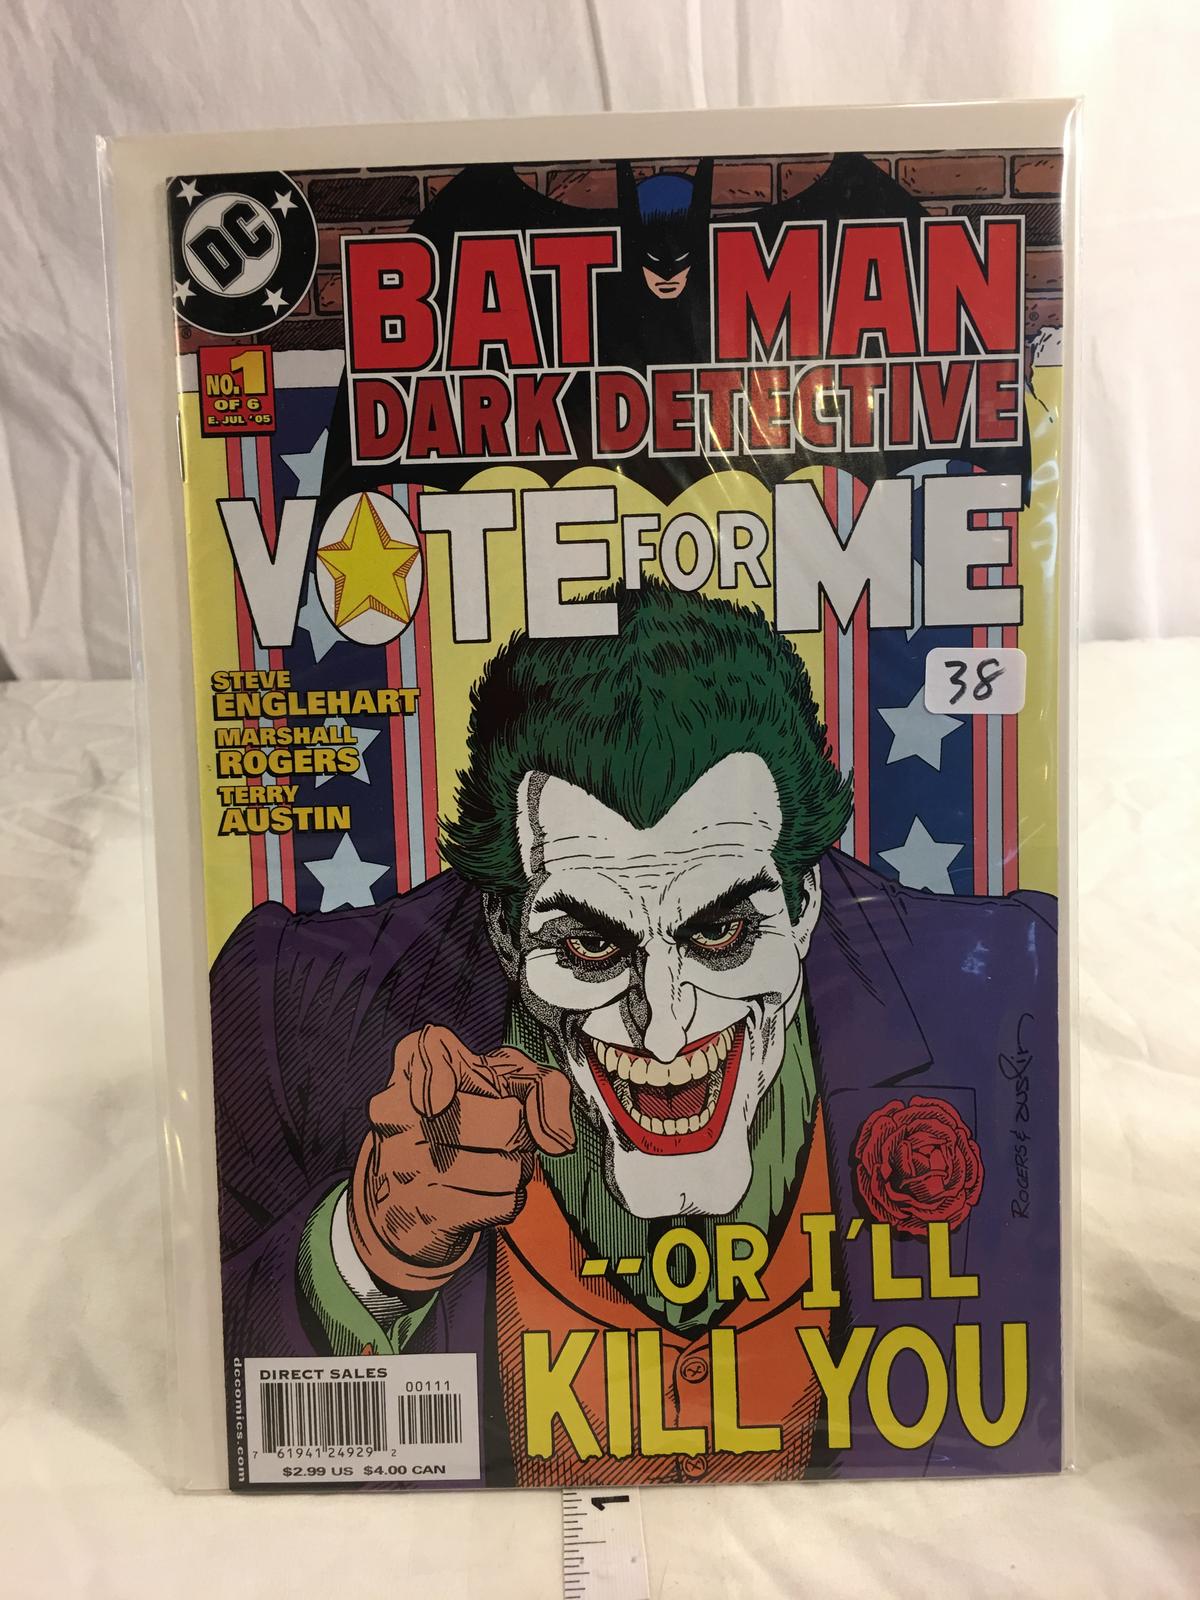 Colletcor DC, Comics Batman Dark Detective  Vote For Me Comic Book #1 of 6